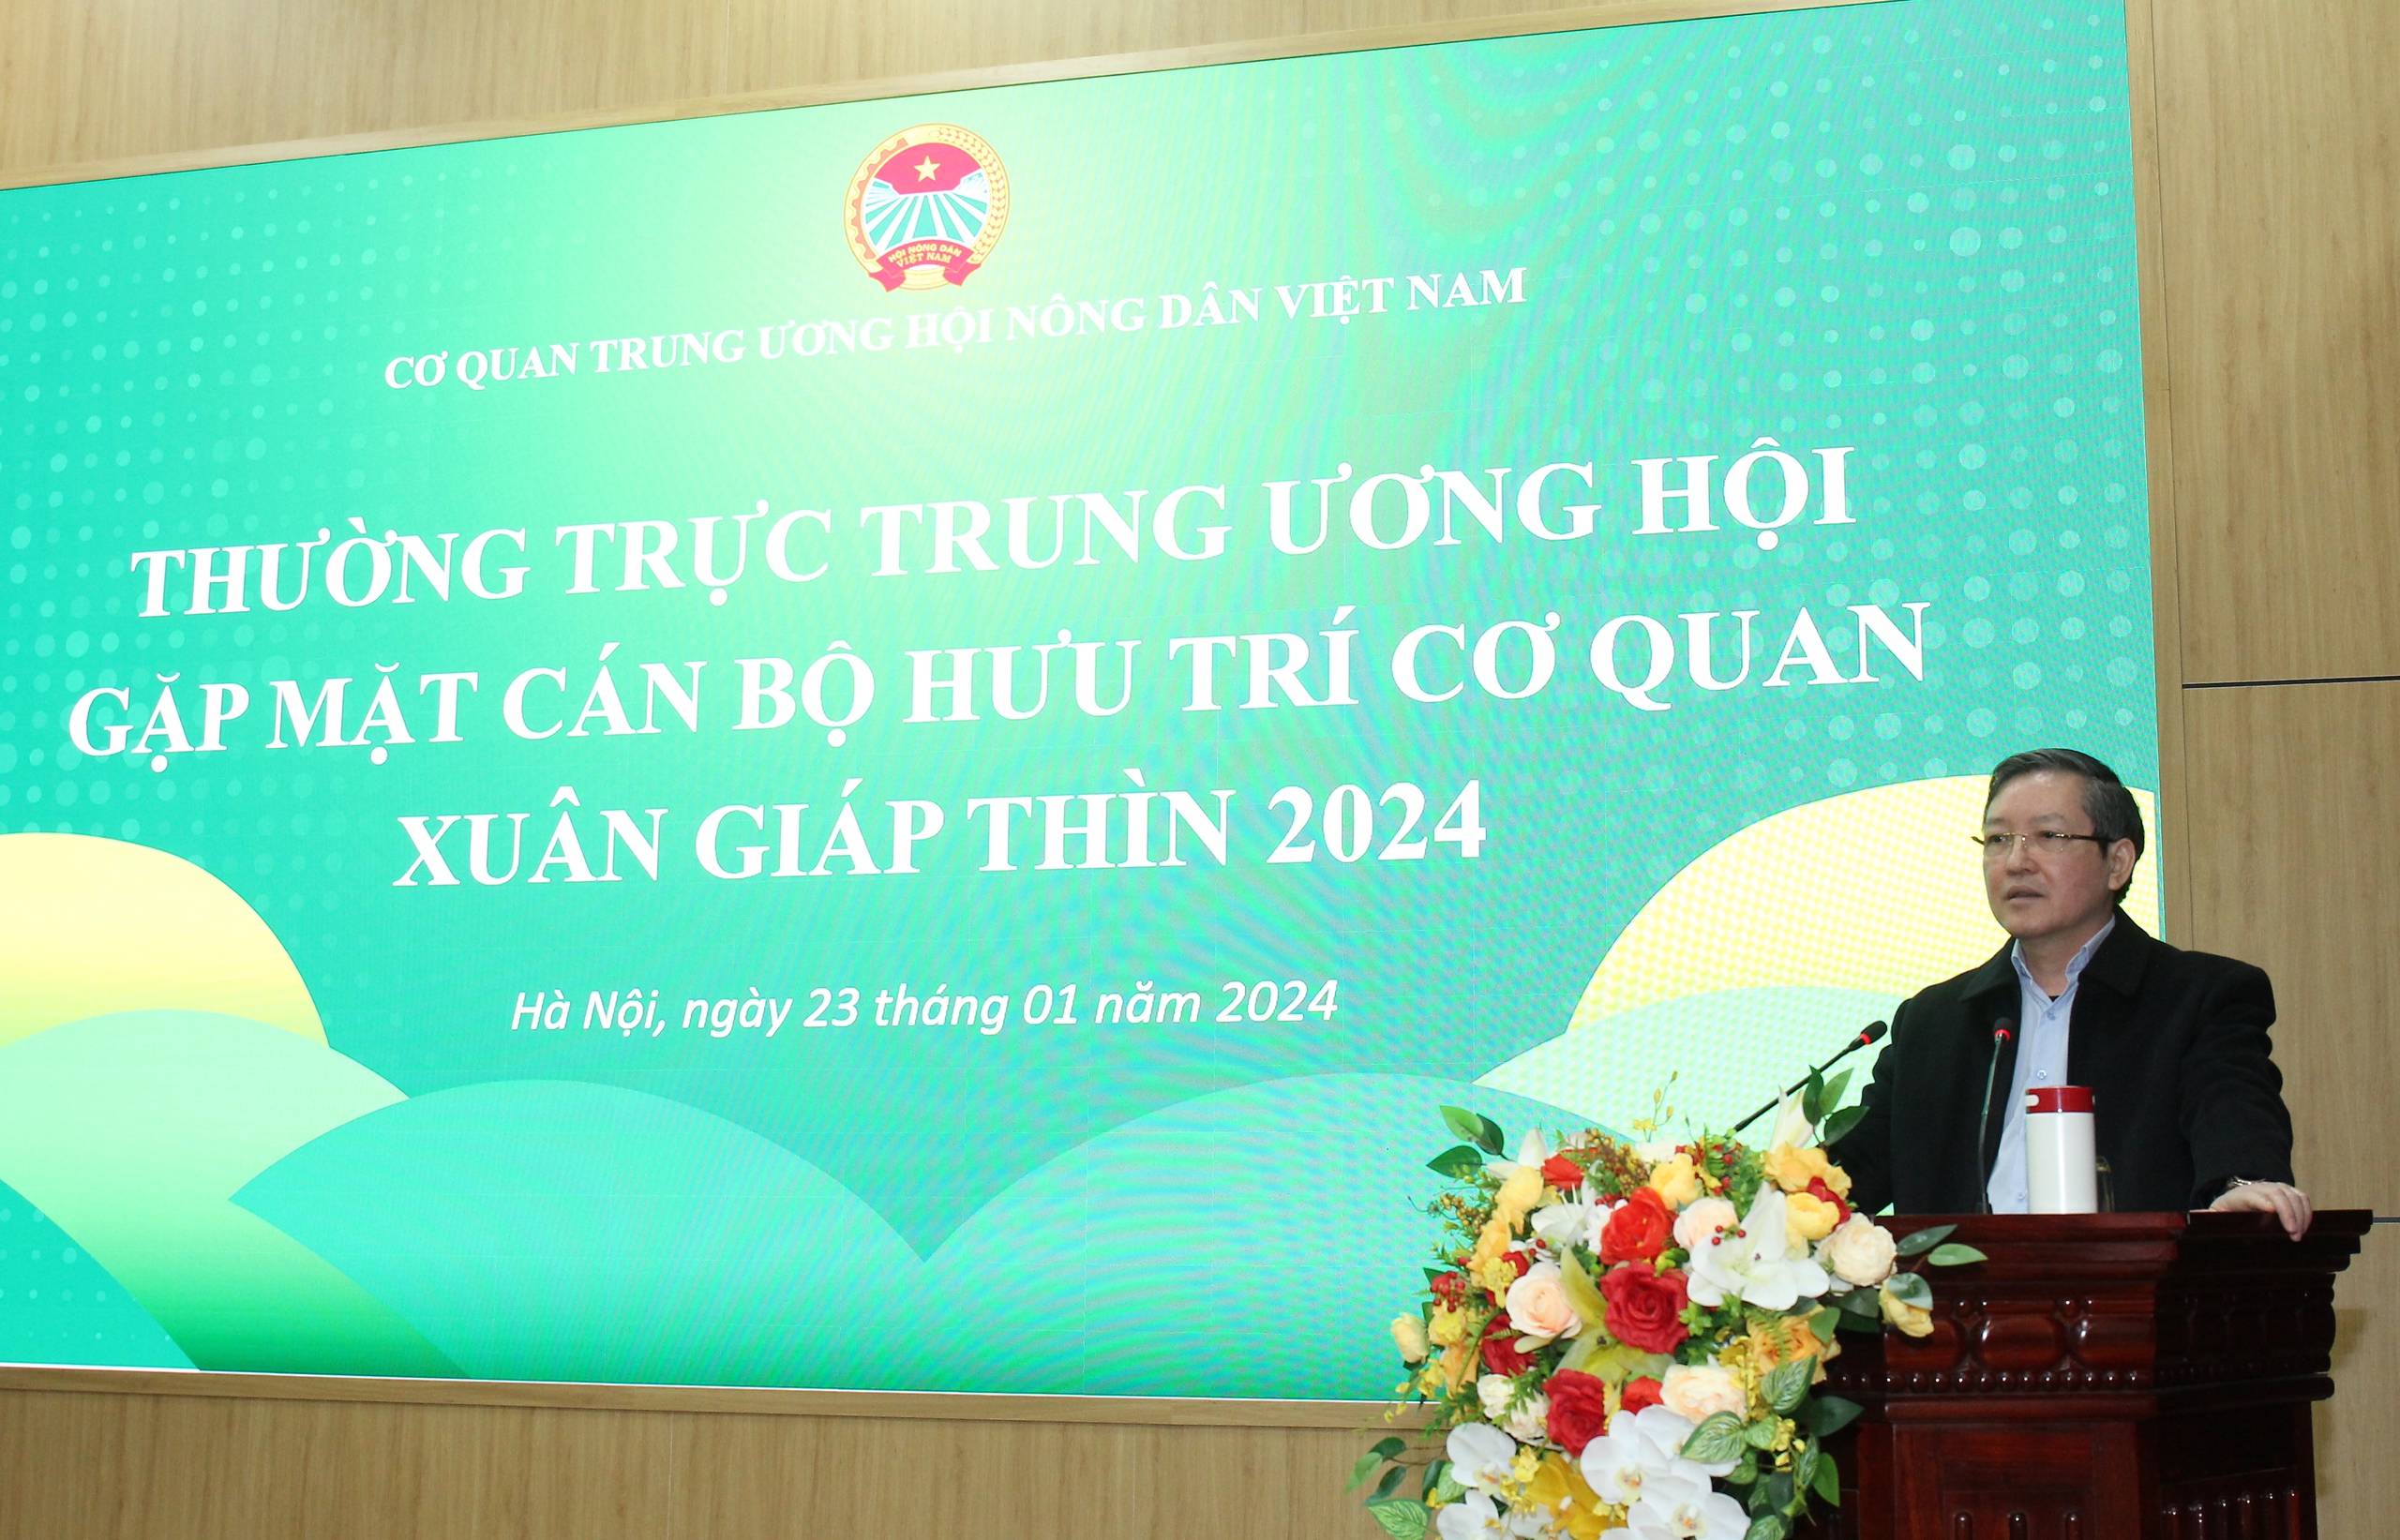 Trung ương Hội Nông dân Việt Nam gặp mặt cán bộ hưu trí nhân dịp đón Xuân Giáp Thìn 2024- Ảnh 1.